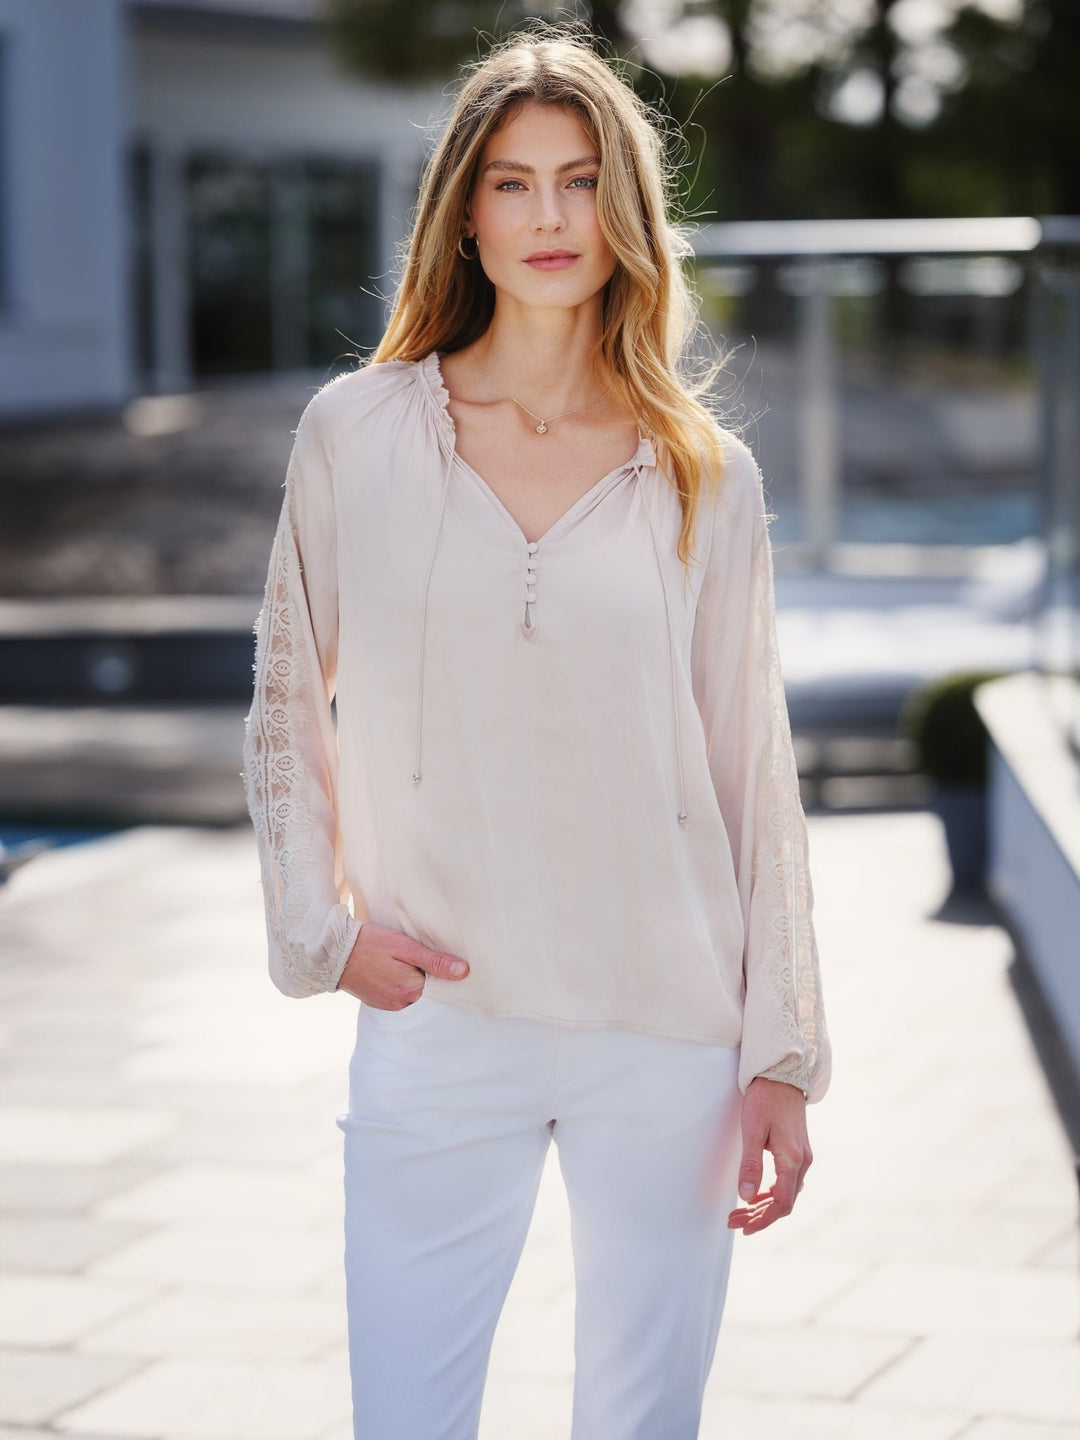 Karoline Blouse Sand | Skjorter og bluser | Smuk - Dameklær på nett